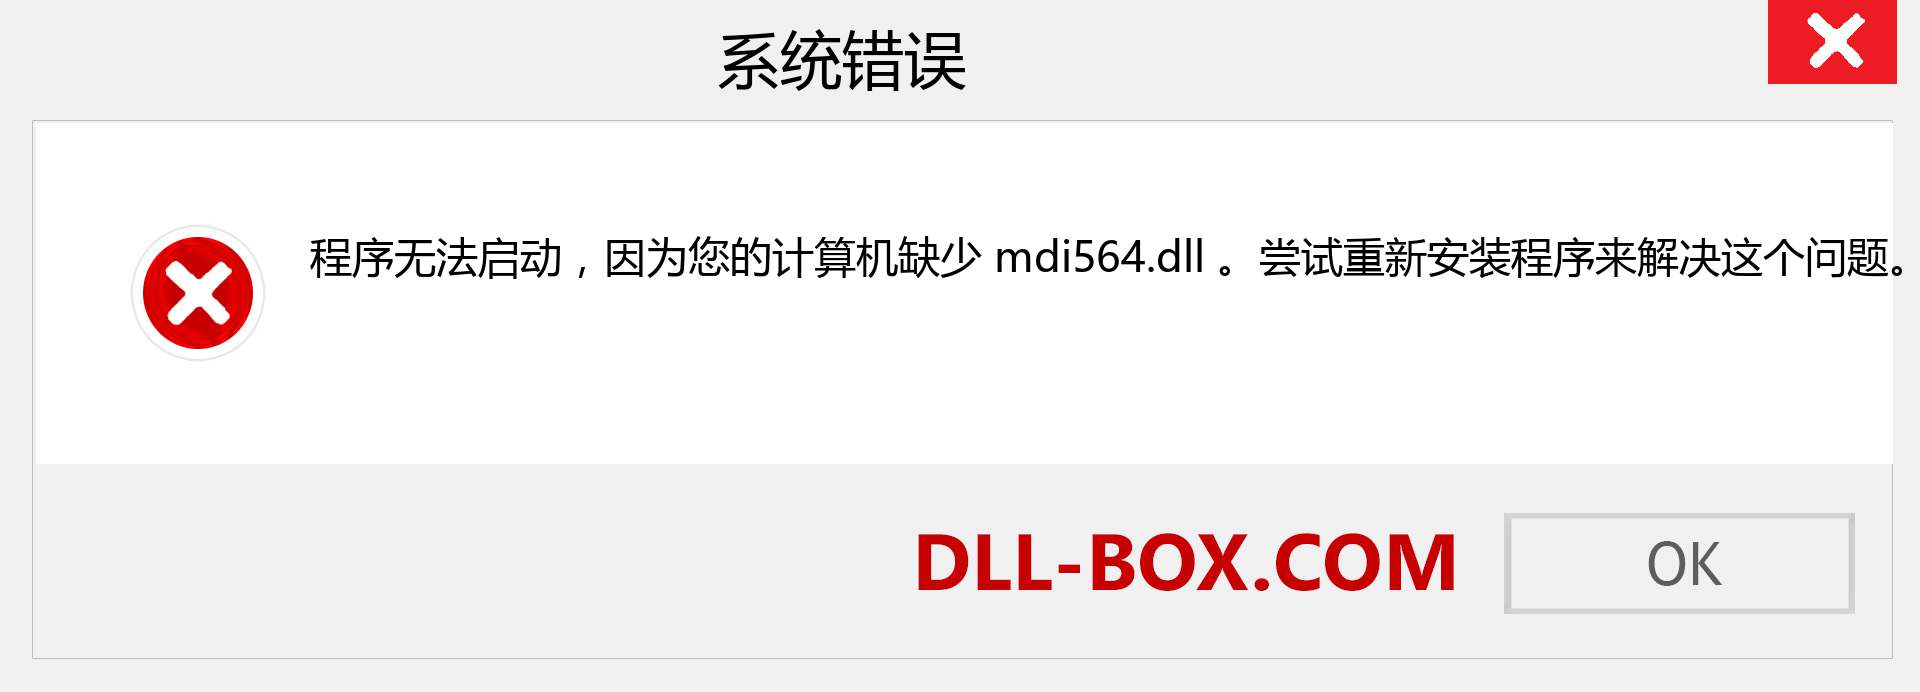 mdi564.dll 文件丢失？。 适用于 Windows 7、8、10 的下载 - 修复 Windows、照片、图像上的 mdi564 dll 丢失错误